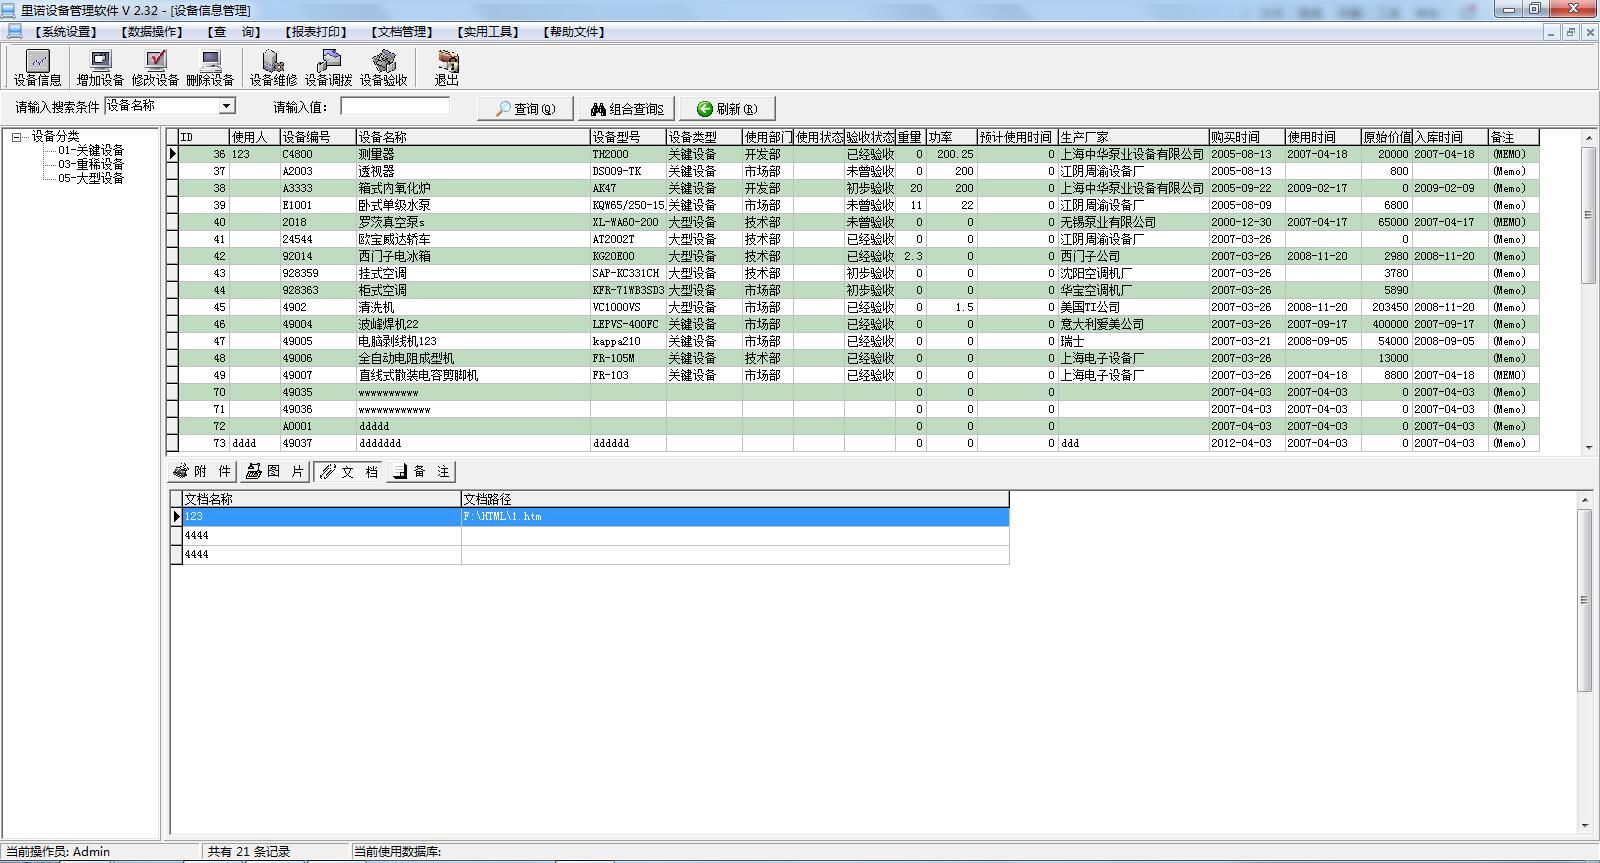 里诺设备管理软件 2.32 绿色版